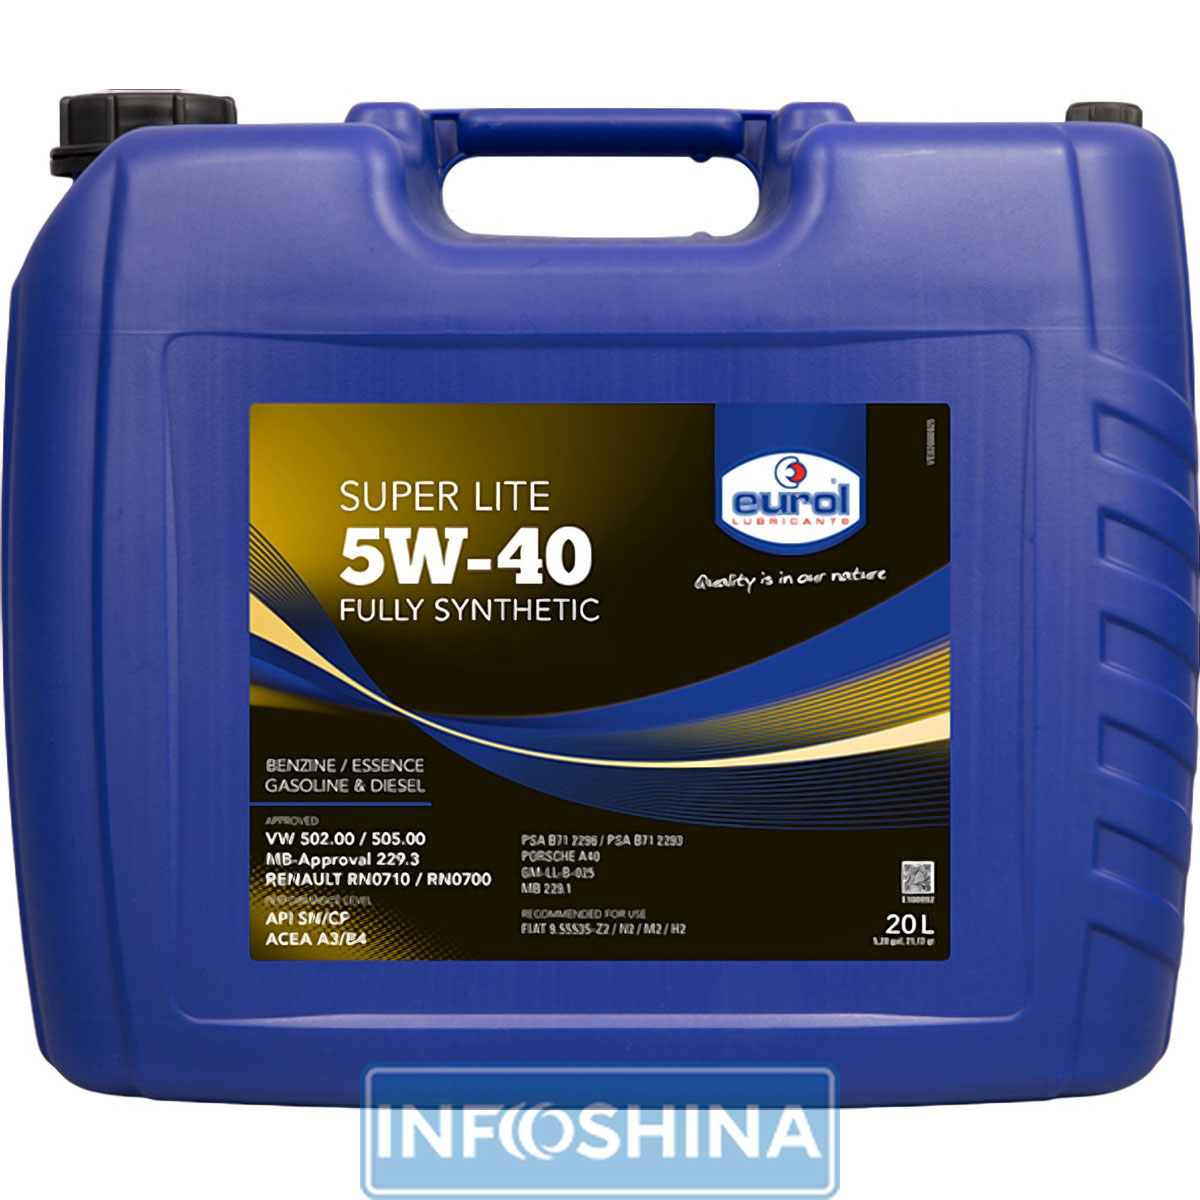 Eurol Super Lite 5W-40